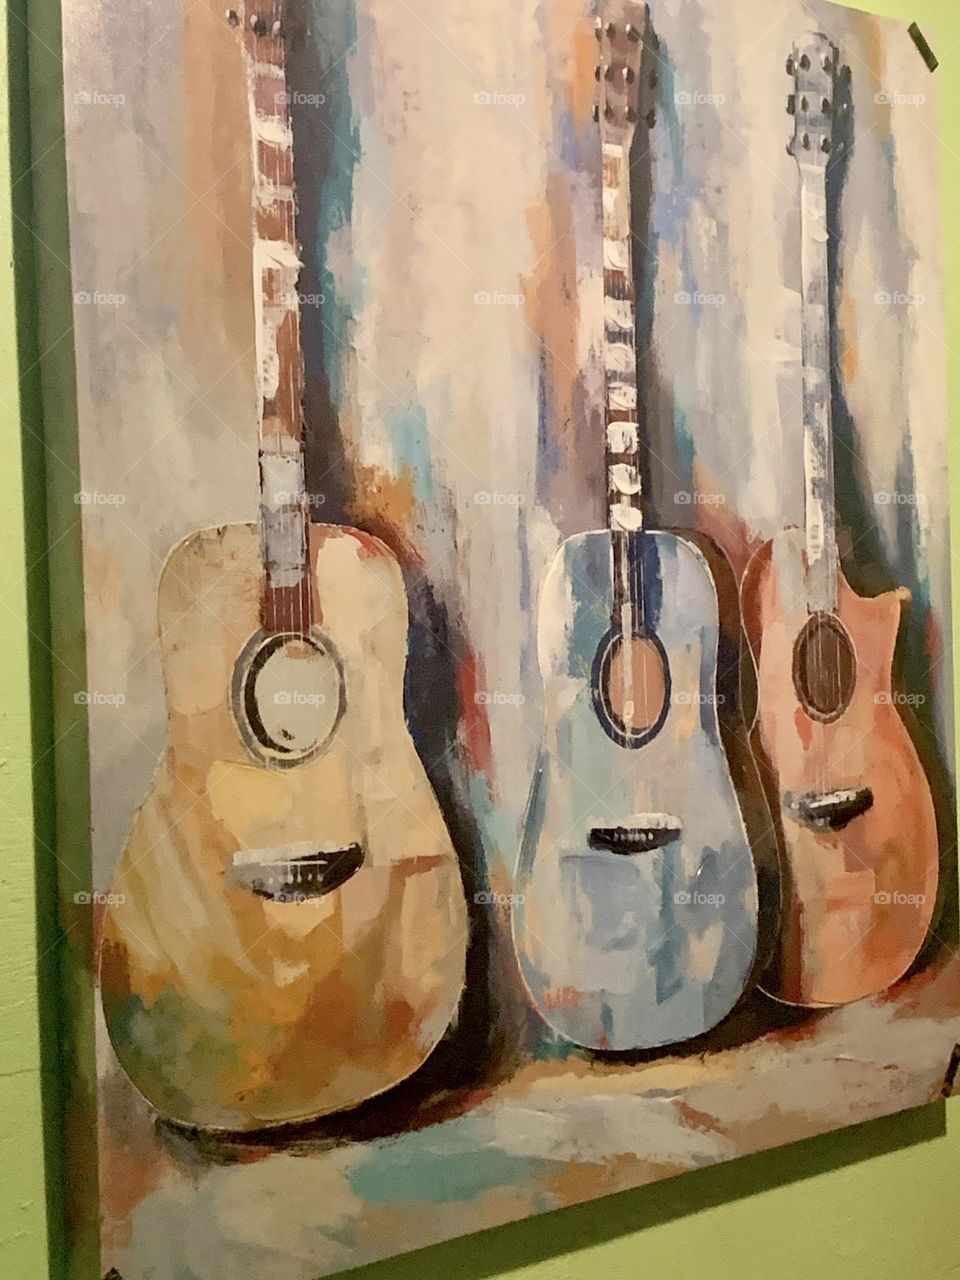 Three guitars 